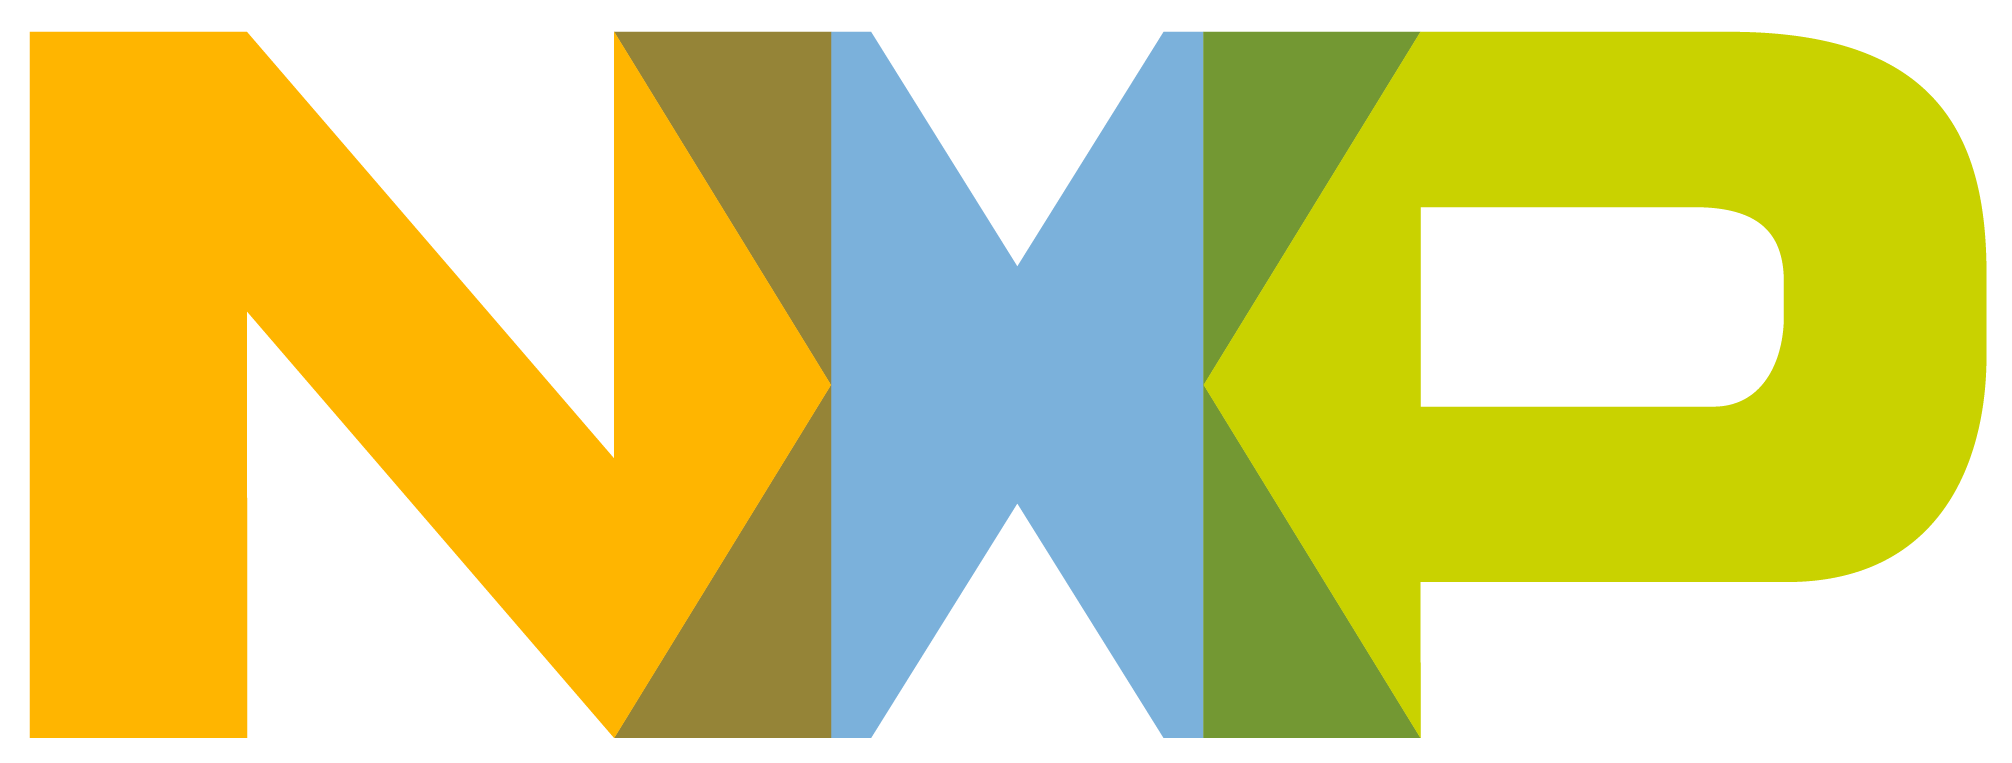 NXP_logo_RGB_web